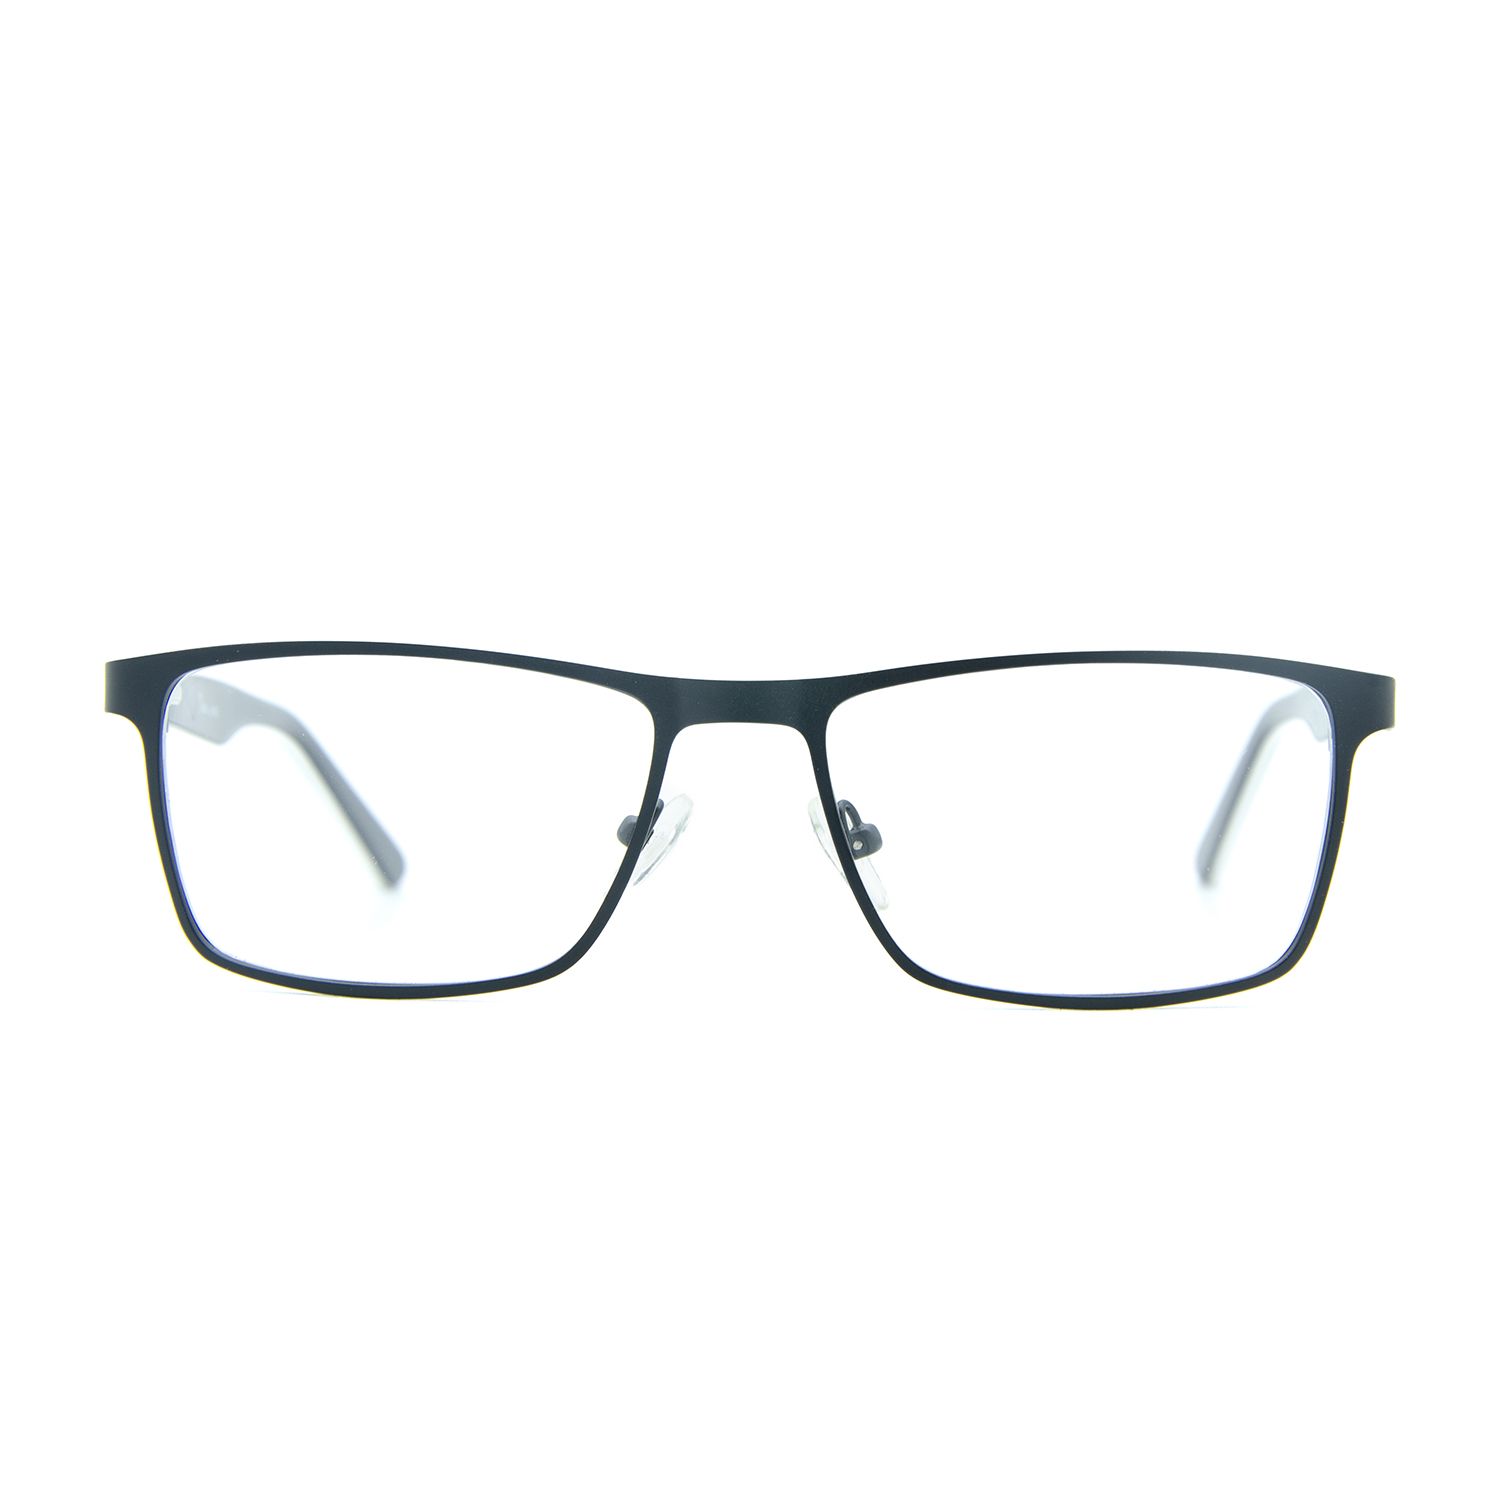 فریم عینک طبی ام اند او مدل Lyro-c2 -  - 1